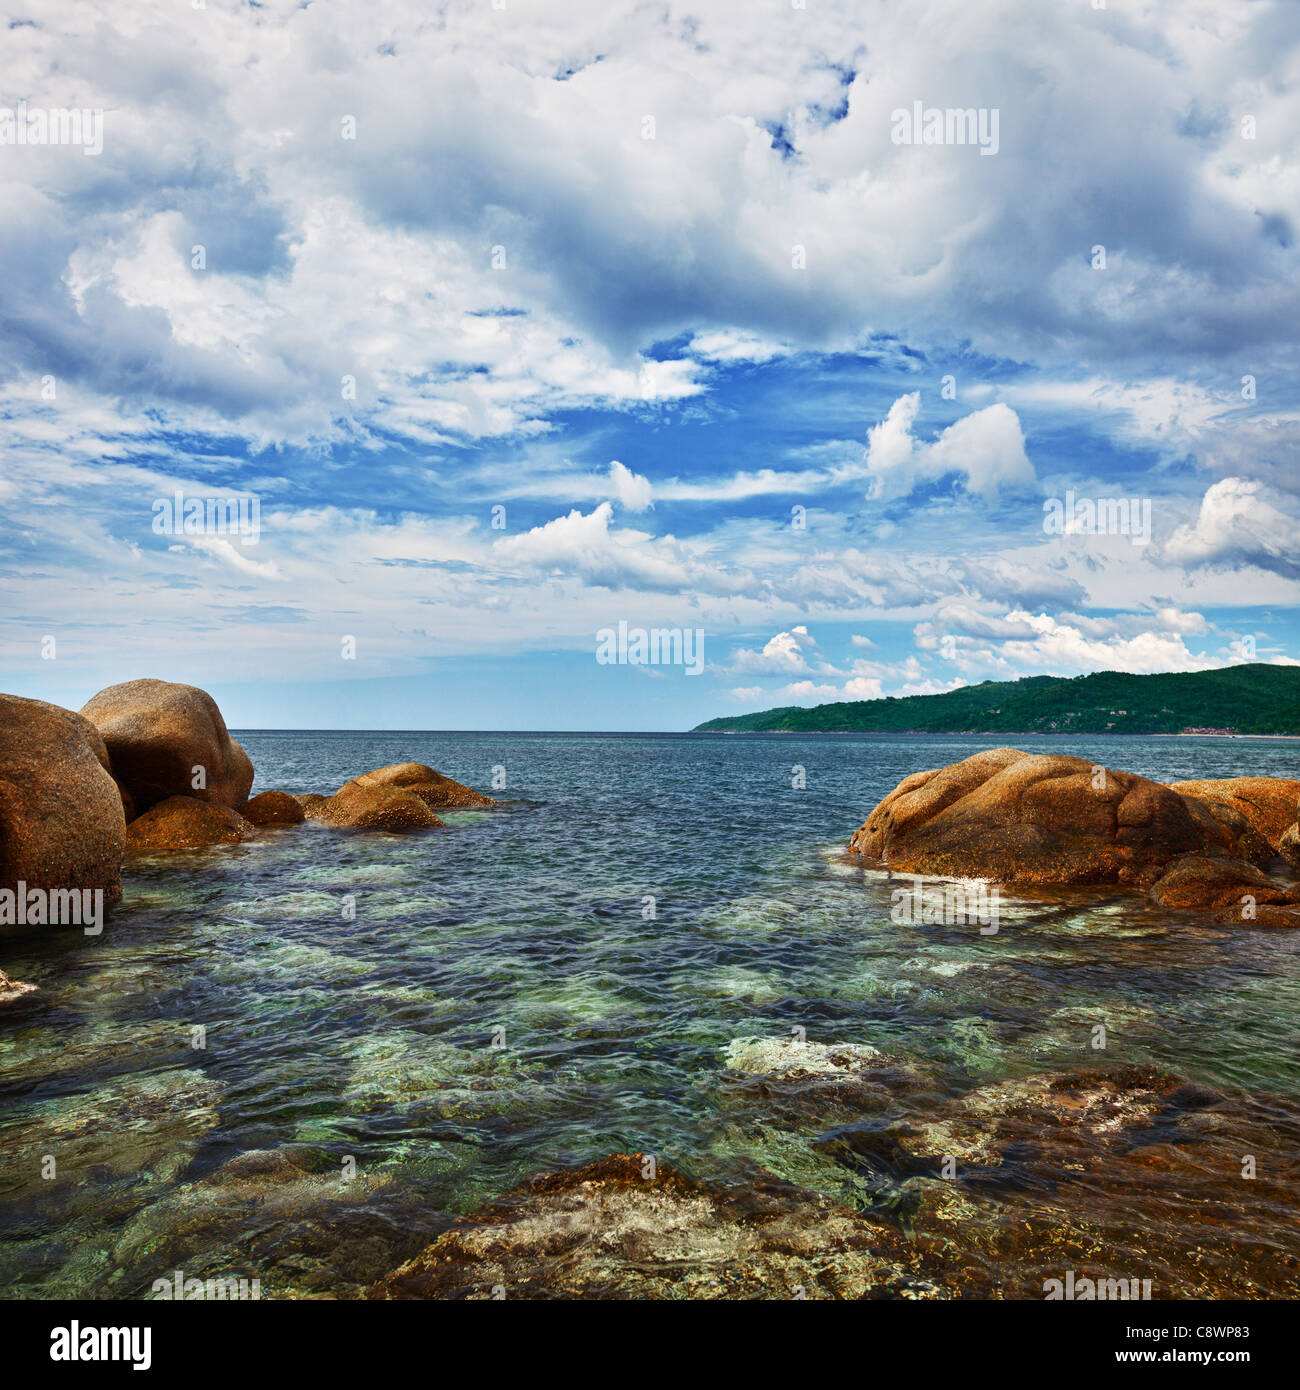 Square - paisaje de acantilados costeros y oceánicos Foto de stock